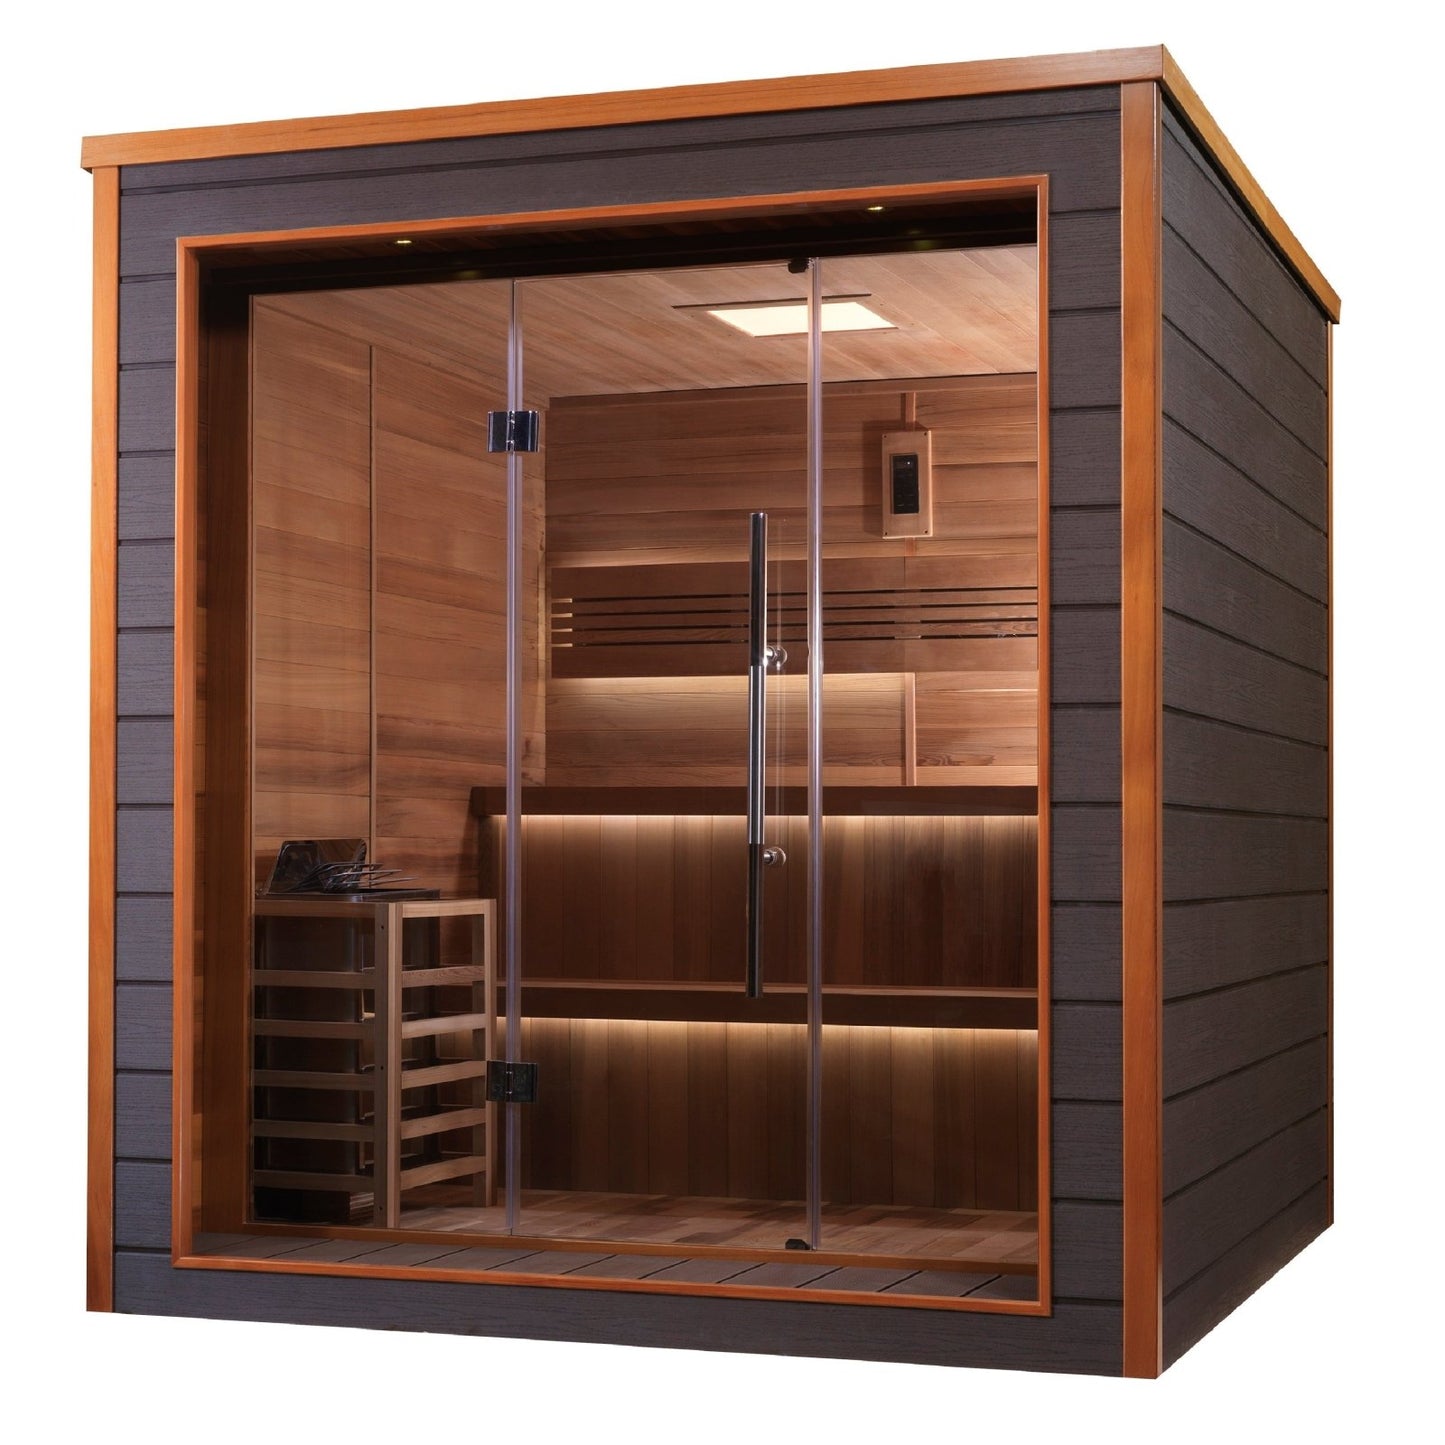 Golden Designs "Bergen" 6-Person Indoor/Outdoor Traditional Steam Sauna (GDI-8206-01) - Red Cedar Interior - GDI-8206-01